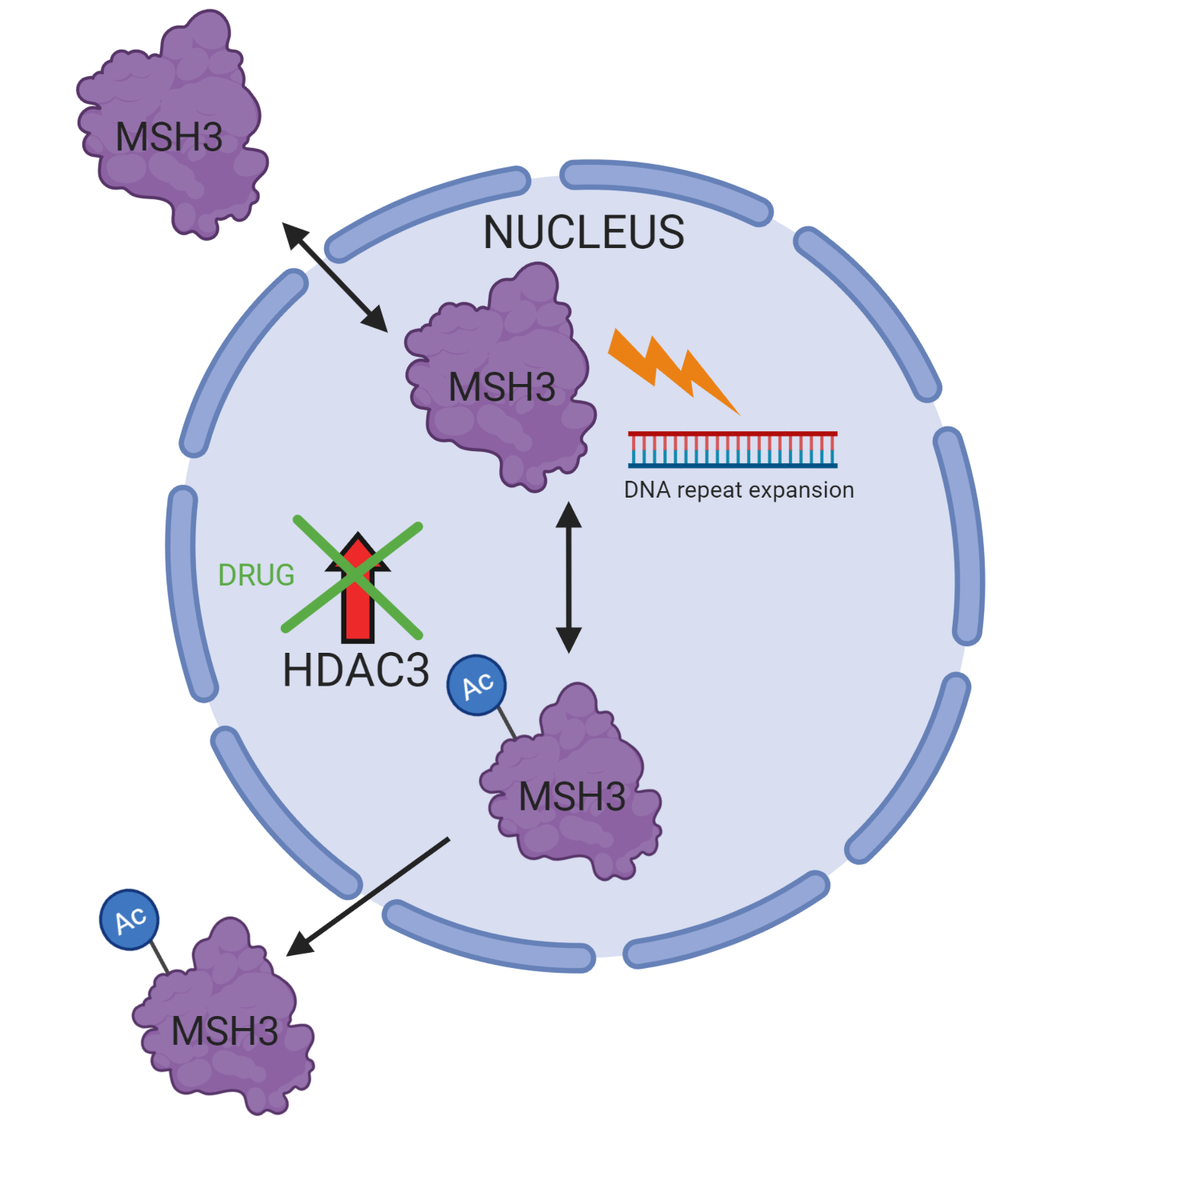 ¿Cómo la droga reduce la expansión de repetición del ADN? Cuando un grupo acetilo (Ac) se añade a MSH3, esta se dirige hacia fuera del núcleo donde no puede acceder la repetición CAG - y así frenando la expansión de las repeticiones. HDAC3 normalmente elimina este grupo Ac, permitiendo a MSH3 estar en el núcleo y llevar a cabo las expansiones. Cuando los científicos tratan las células con esta droga, HDAC3 no es capaz de eliminar la marca Ac, lo que significa que MSH3 queda fuera del núcleo donde no puede acceder a las repeticiones CAG. Esquema hecho con BioRender.   